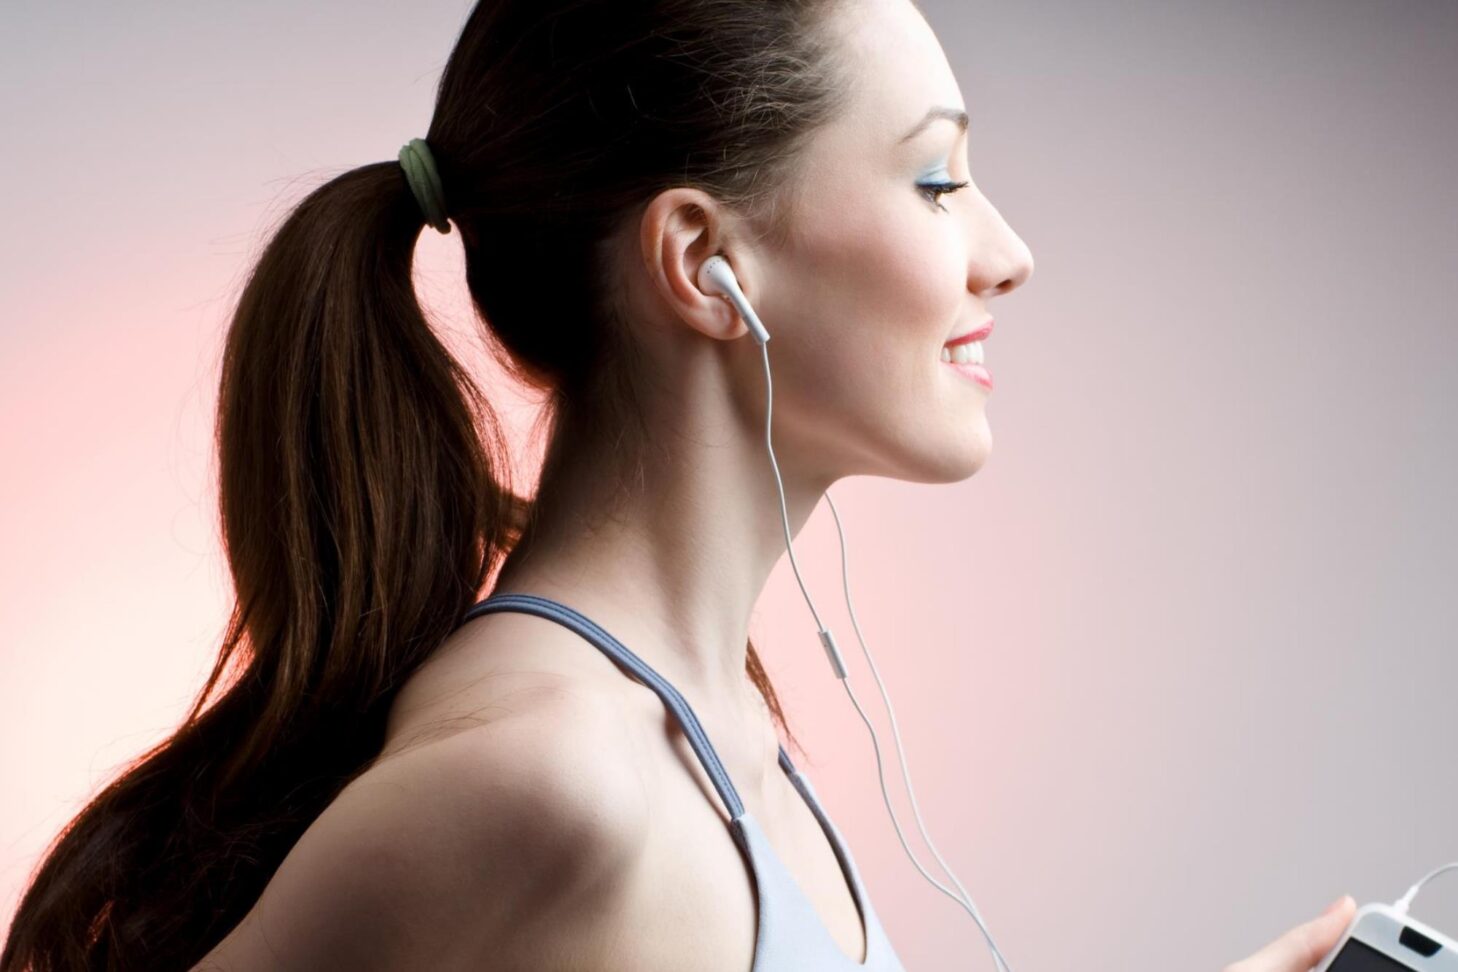 find din hudtype - kvinde med ren hud og hovedtelefoner - ude at løbe mens hun hører musik